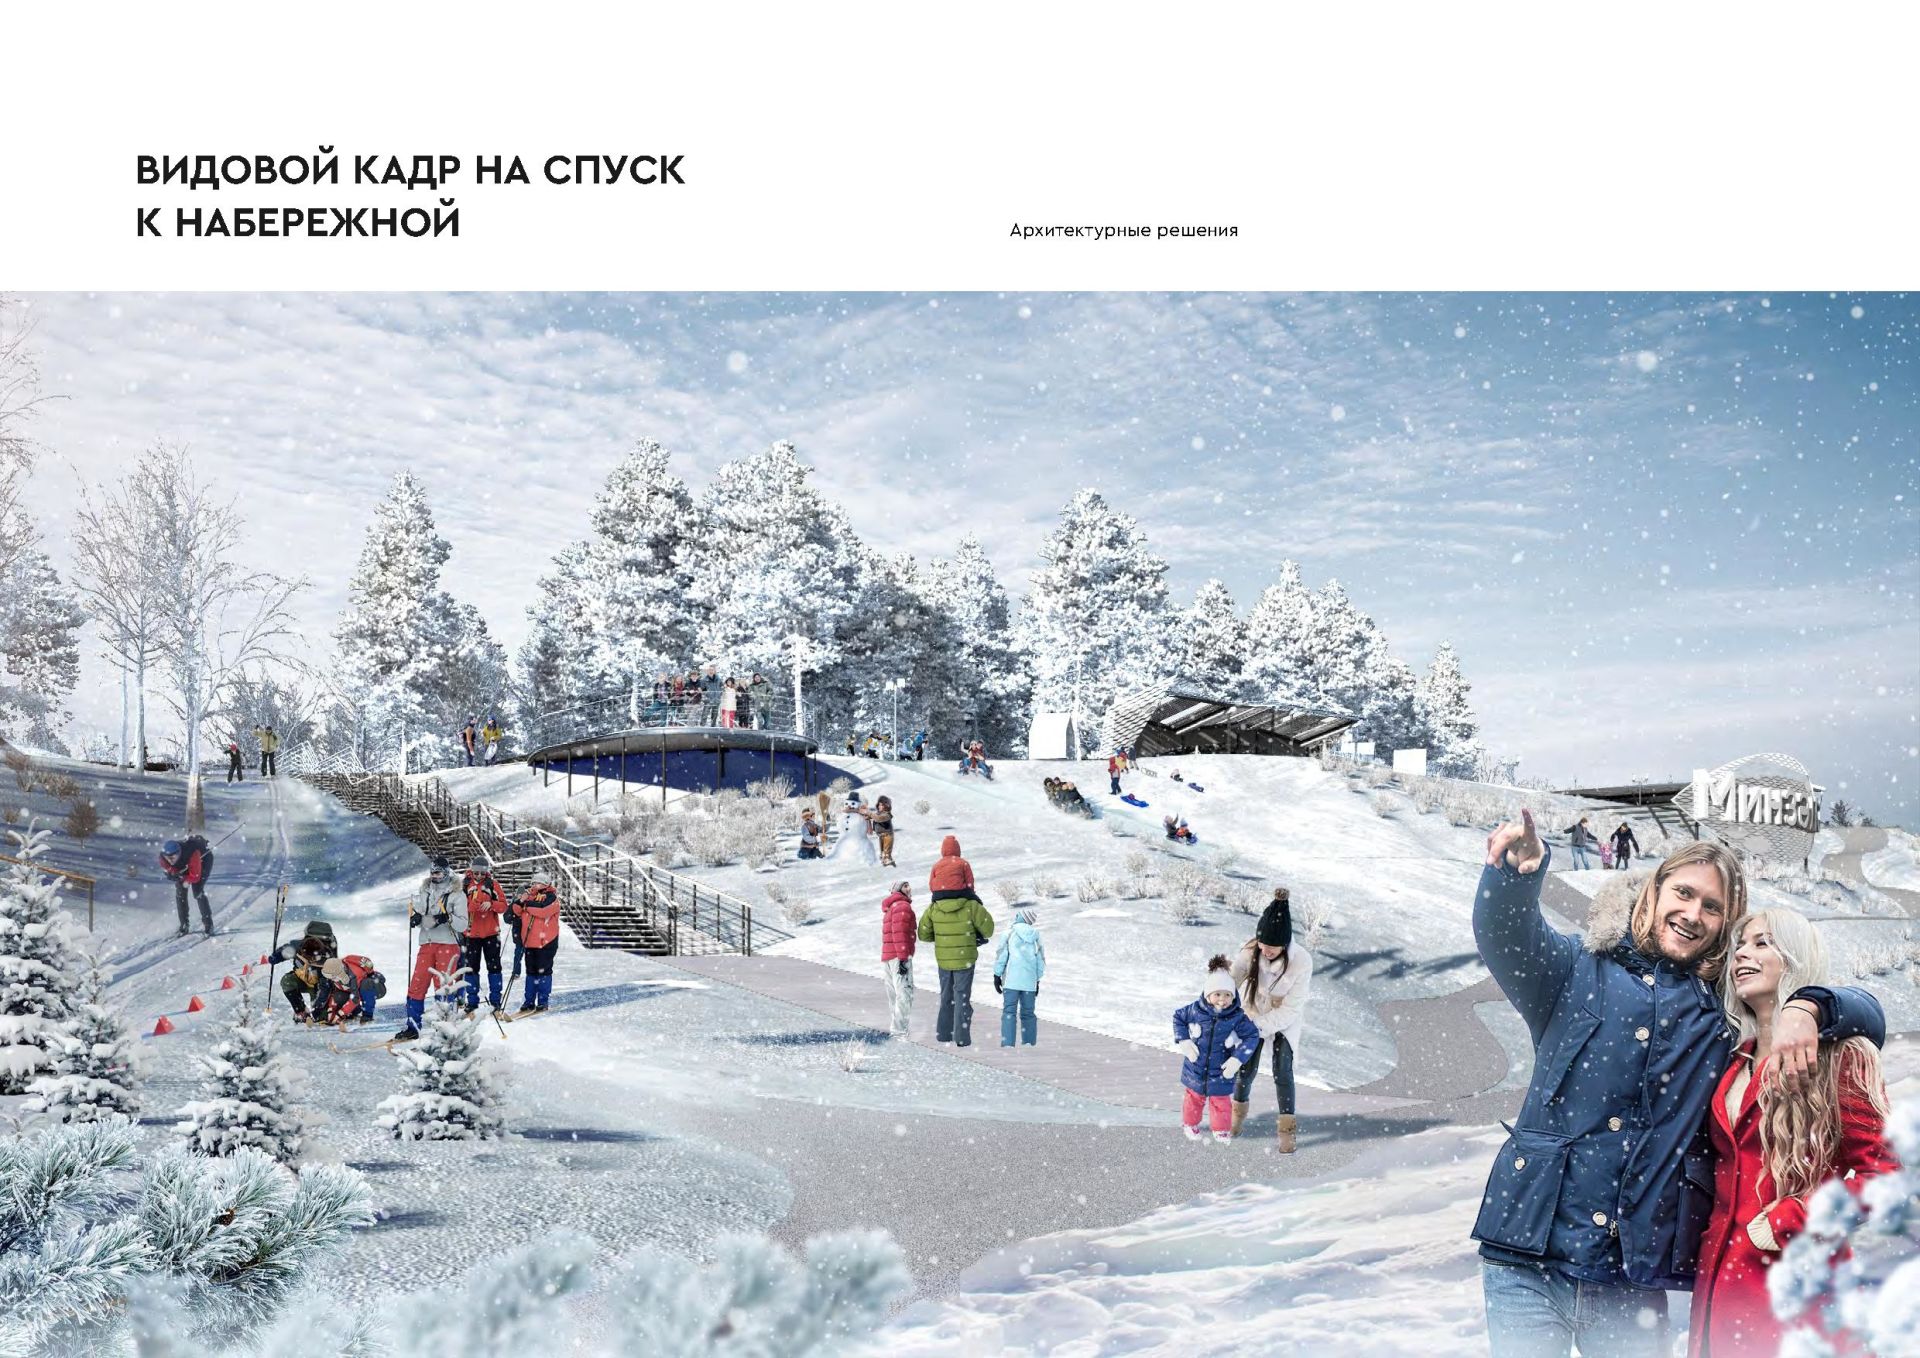 Мензелинский парк вышел в федеральный этап Всероссийского конкурса лучших проектов